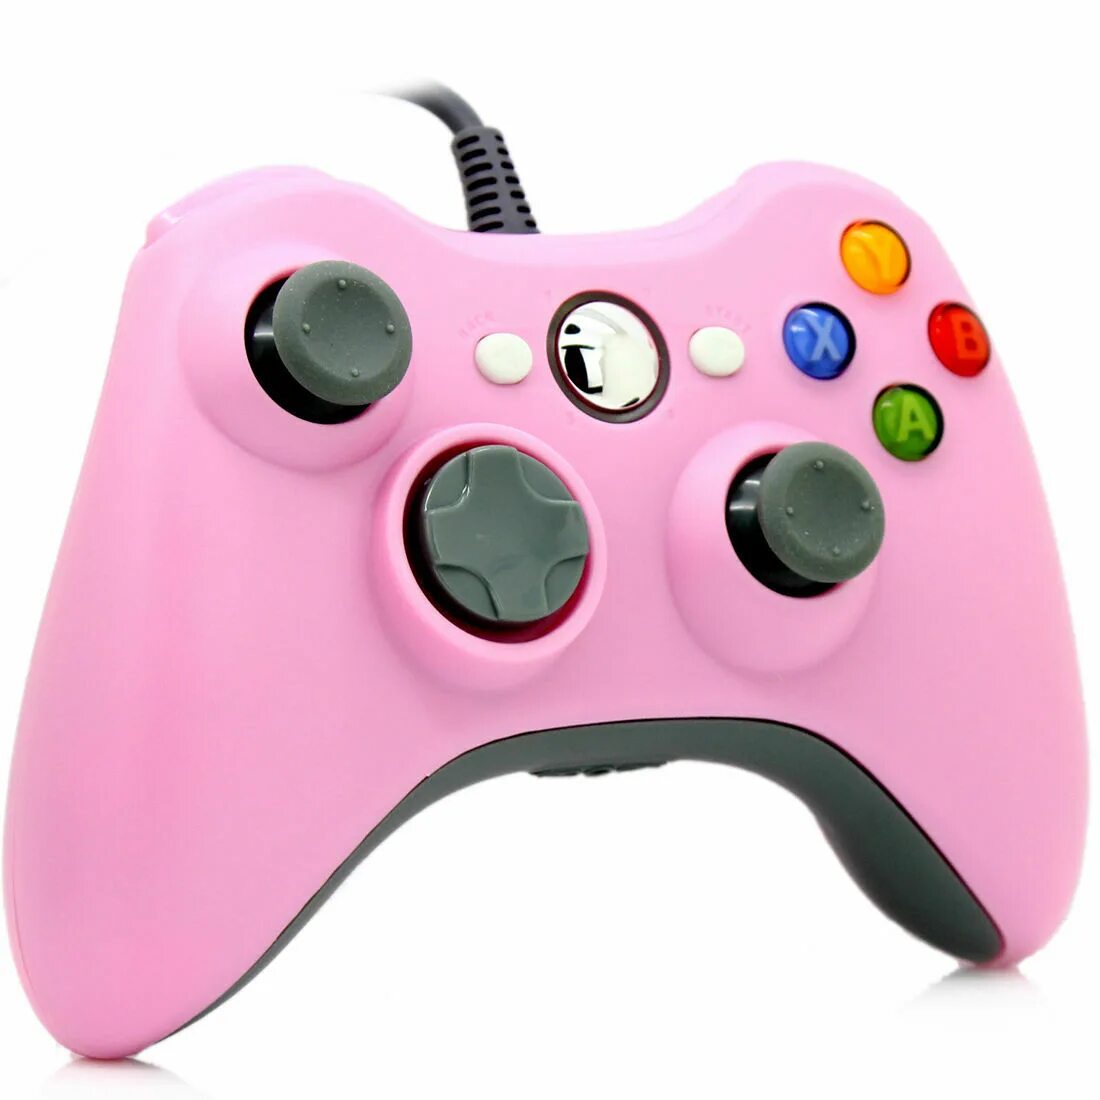 Геймпад Xbox 360 проводной. Джойстик на хбокс розовый. Джойстик Microsoft (Xbox 360) USB=2422917. Геймпад Xbox 360 Rock Pink. Розовый джойстик